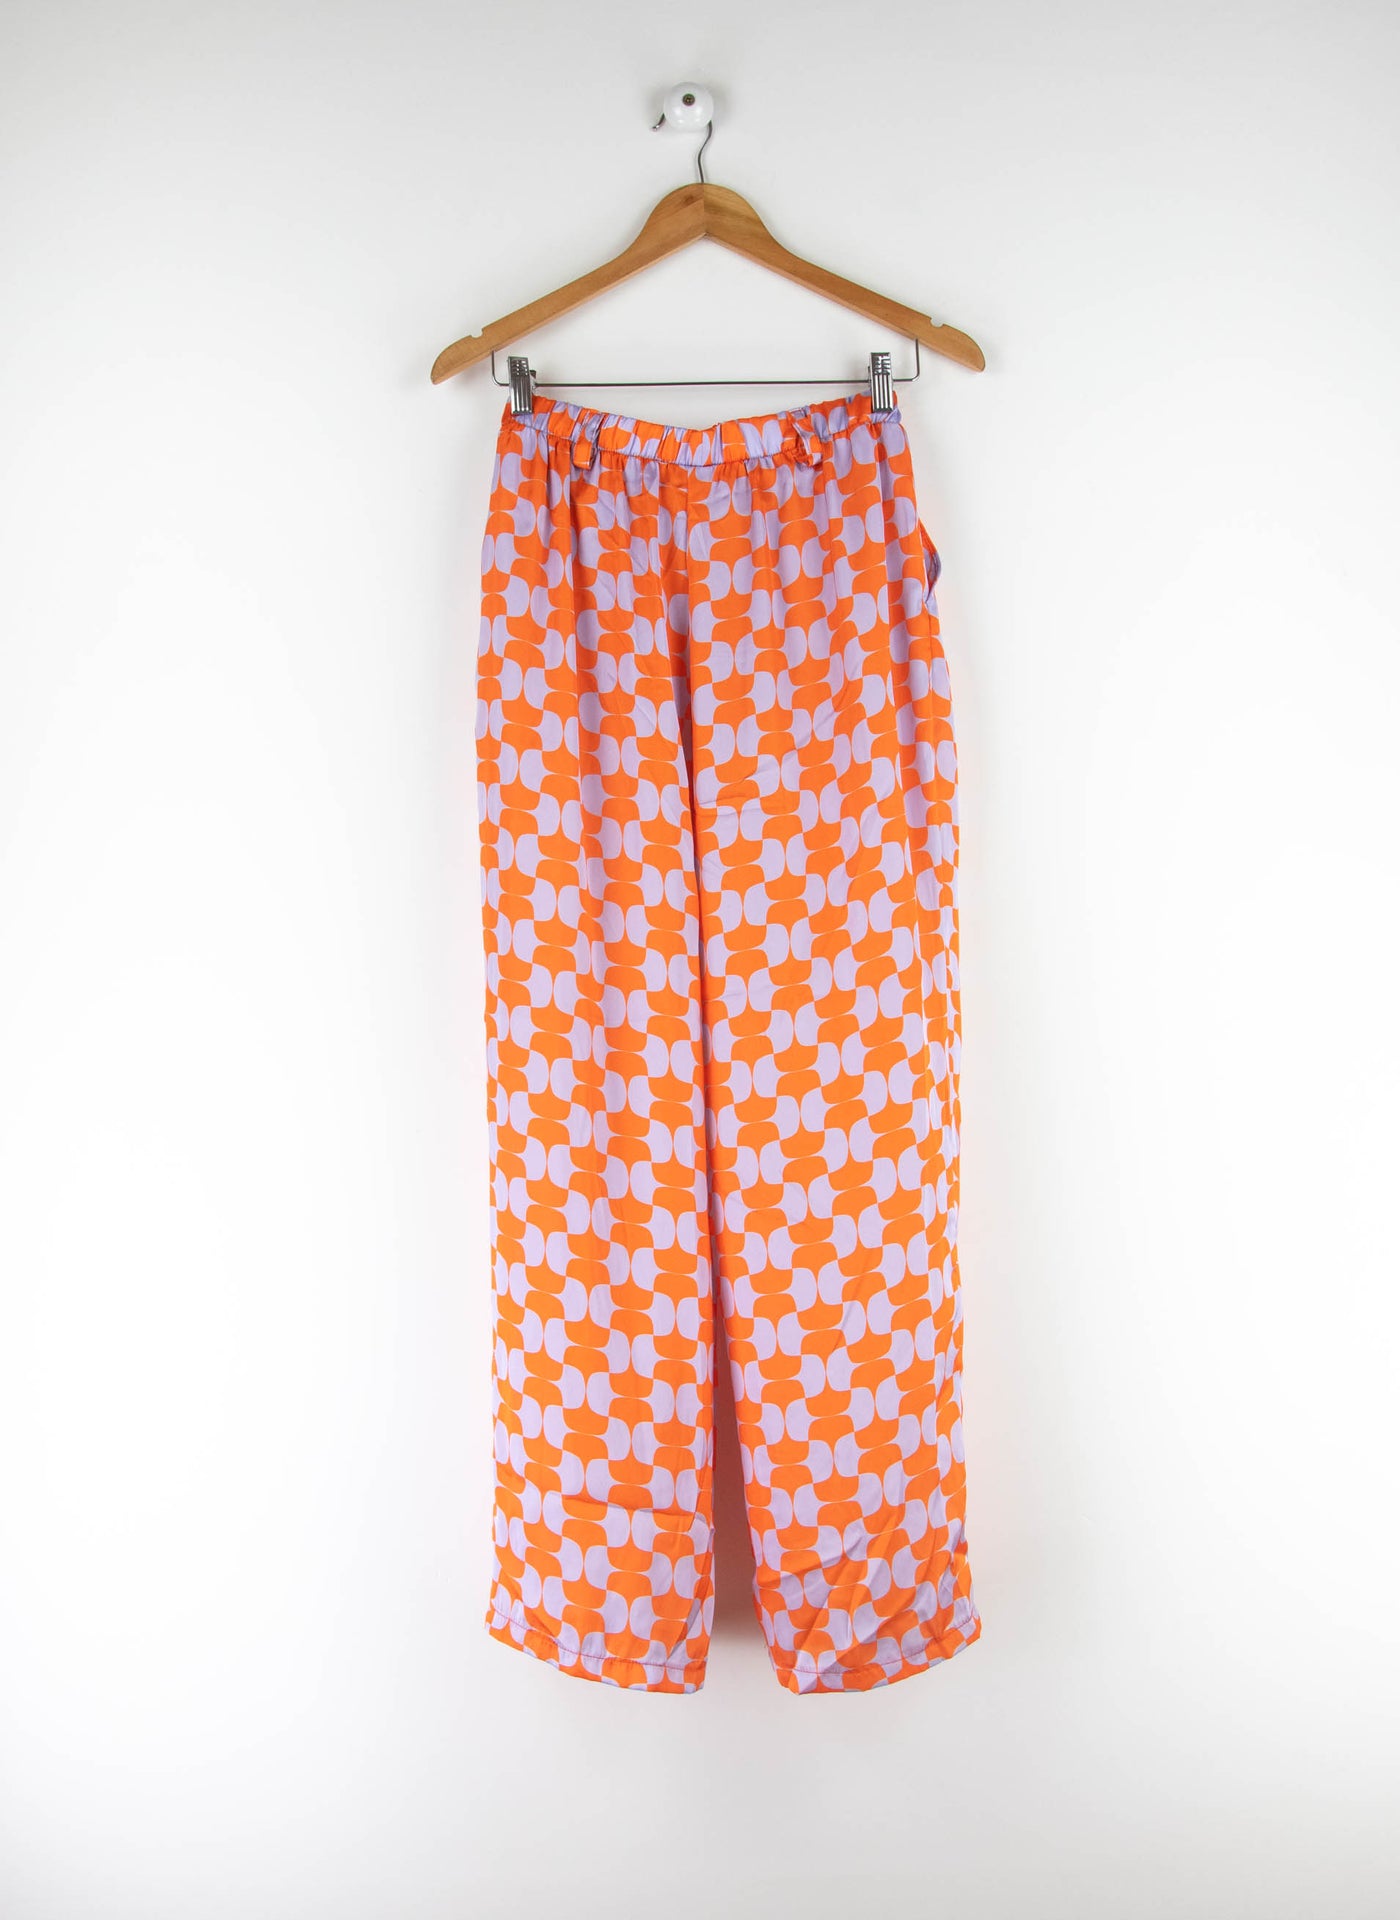 Conjunto top y pantalón satinado naranja y gris